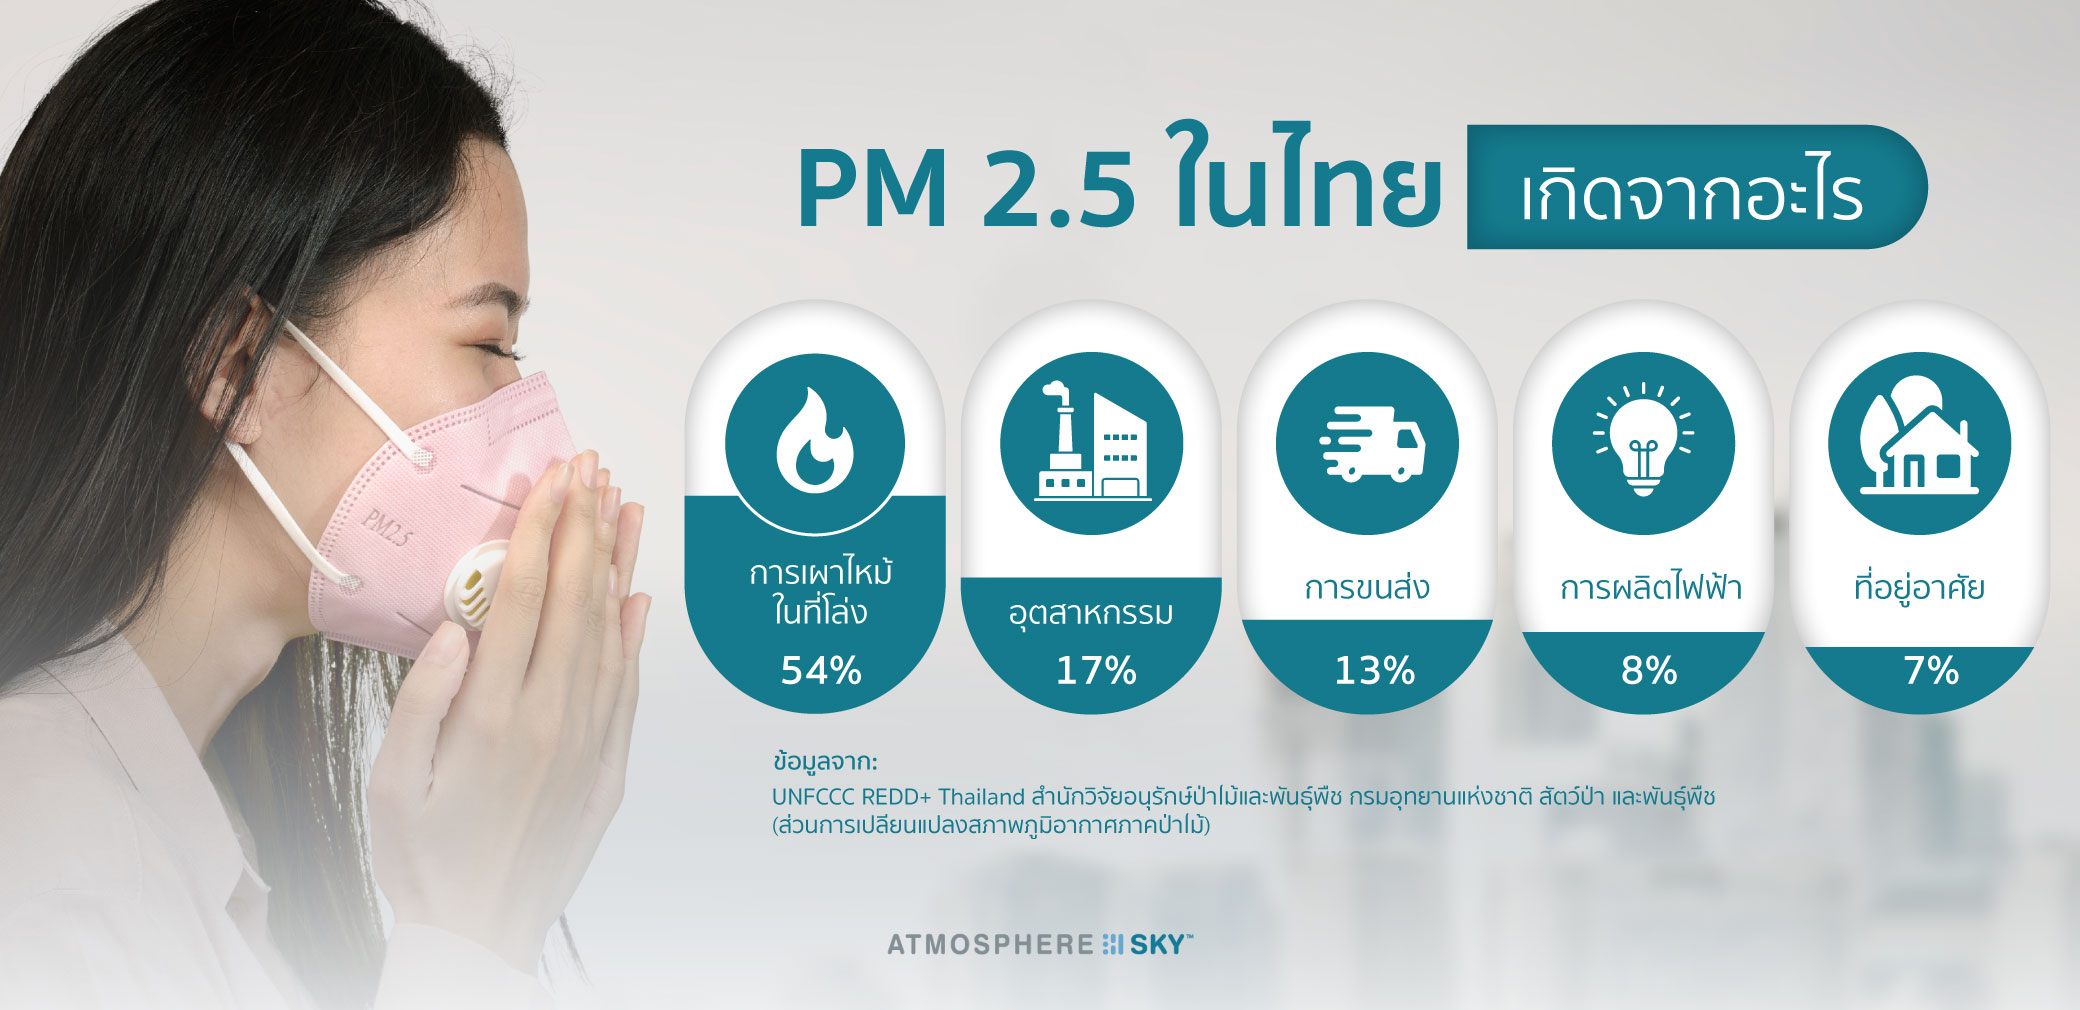 ฝุ่น PM 2.5 ในไทย เกิดจากอะไร